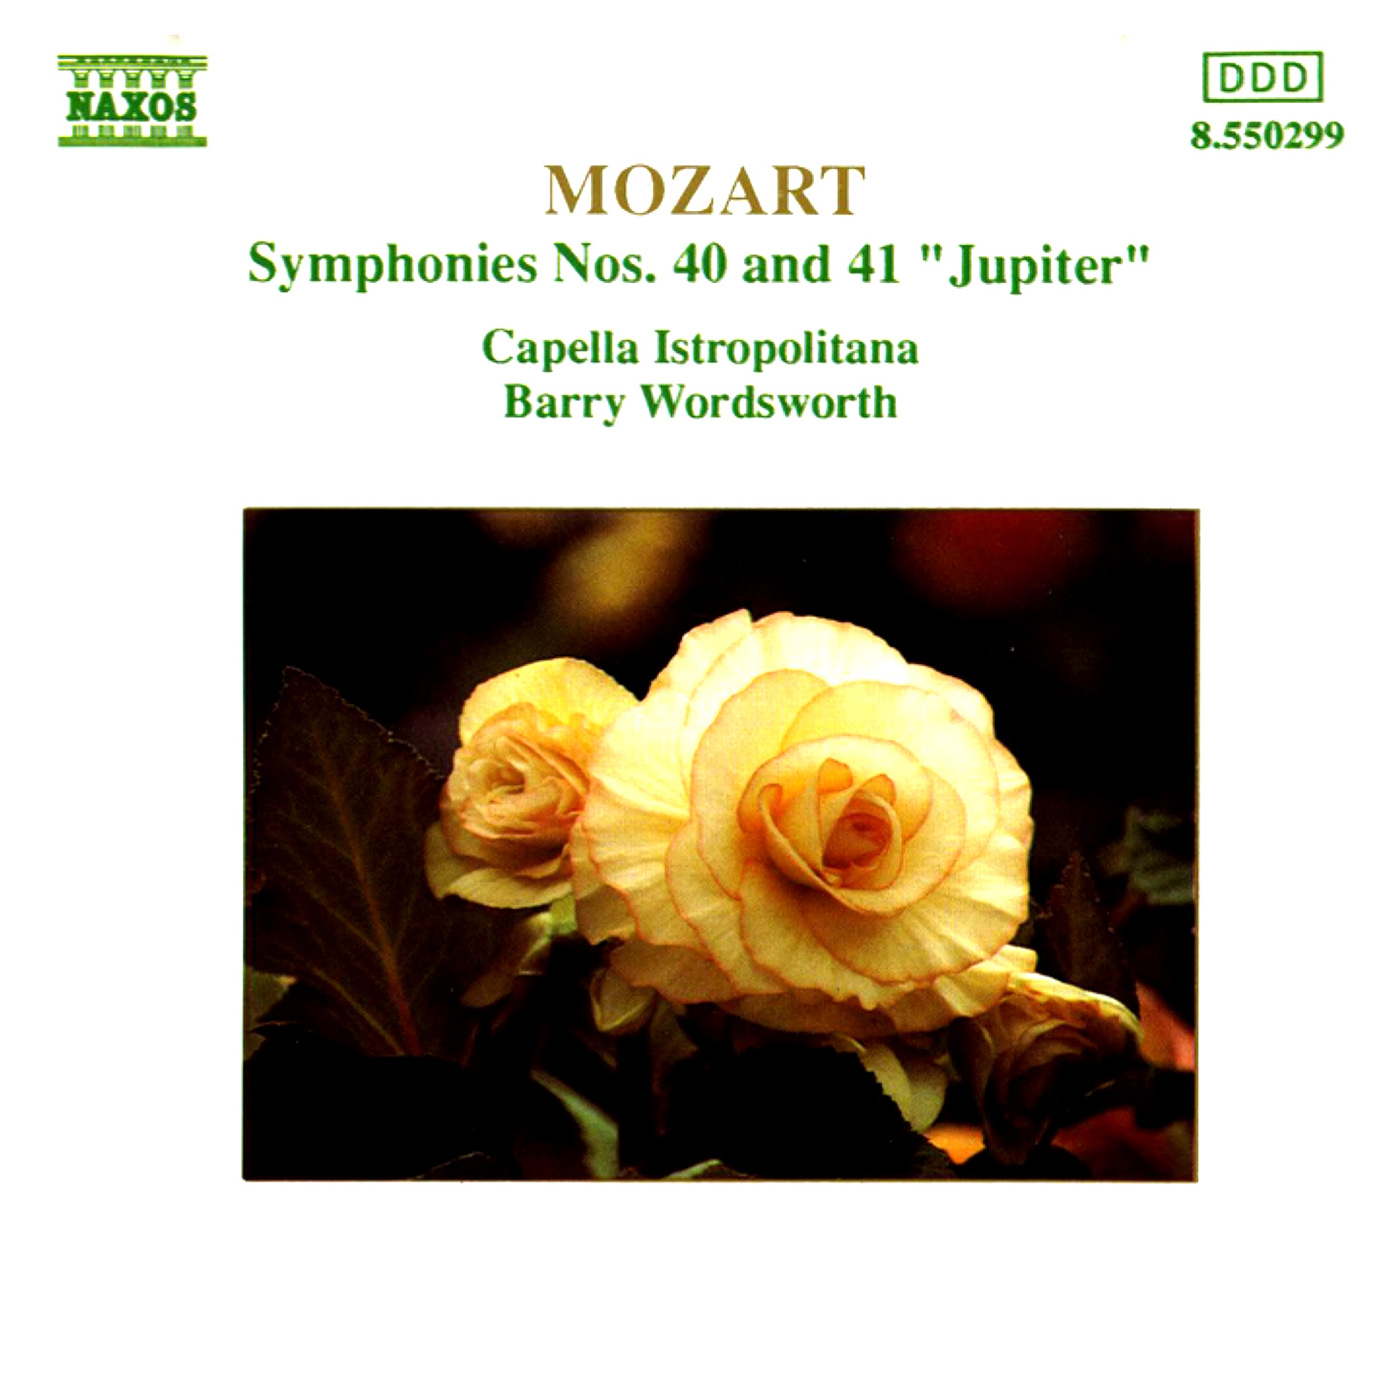 Symphony No. 41 in C Major, K. 551, "Jupiter":IV. Molto allegro